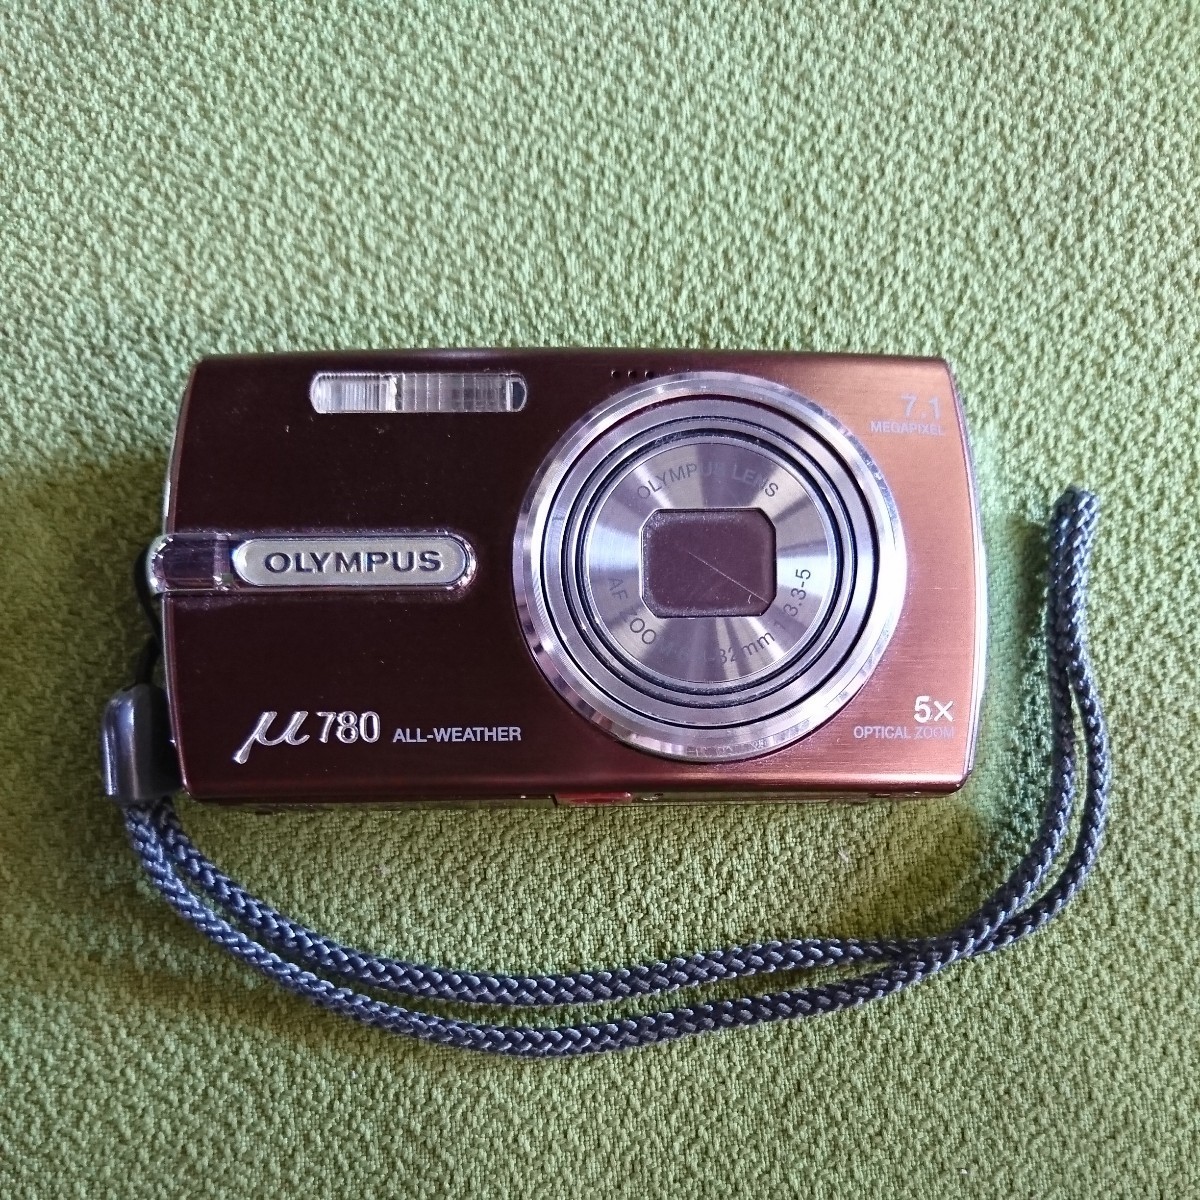 OLYMPUS μ 780 デジタルカメラ コンパクトカメラ 現状販売品 ジャンク